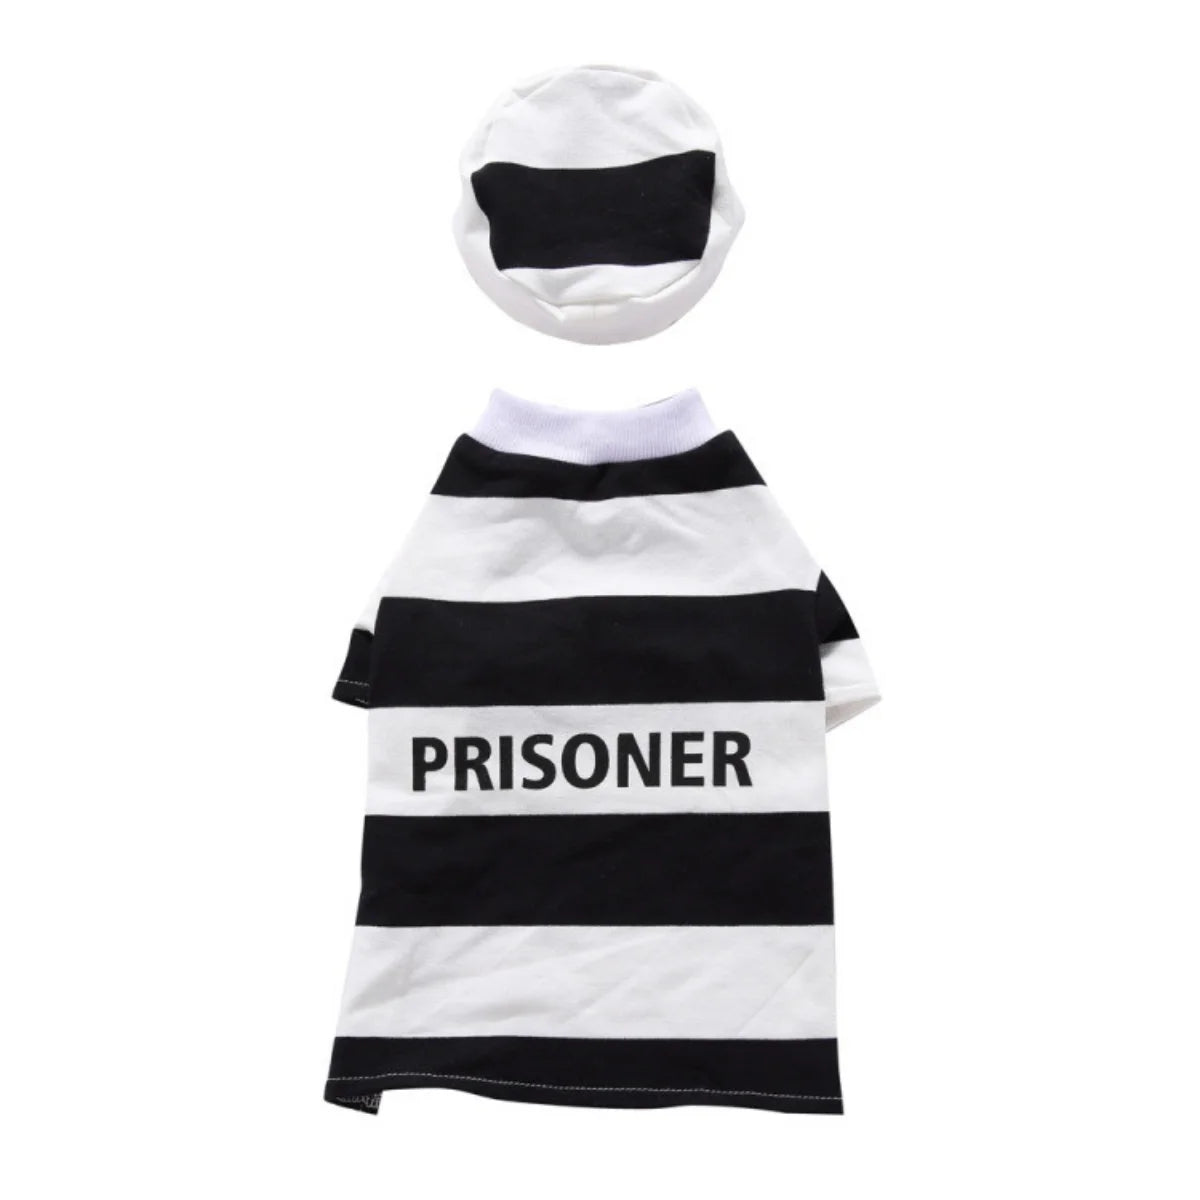 Vetopia Costume - Prisoner